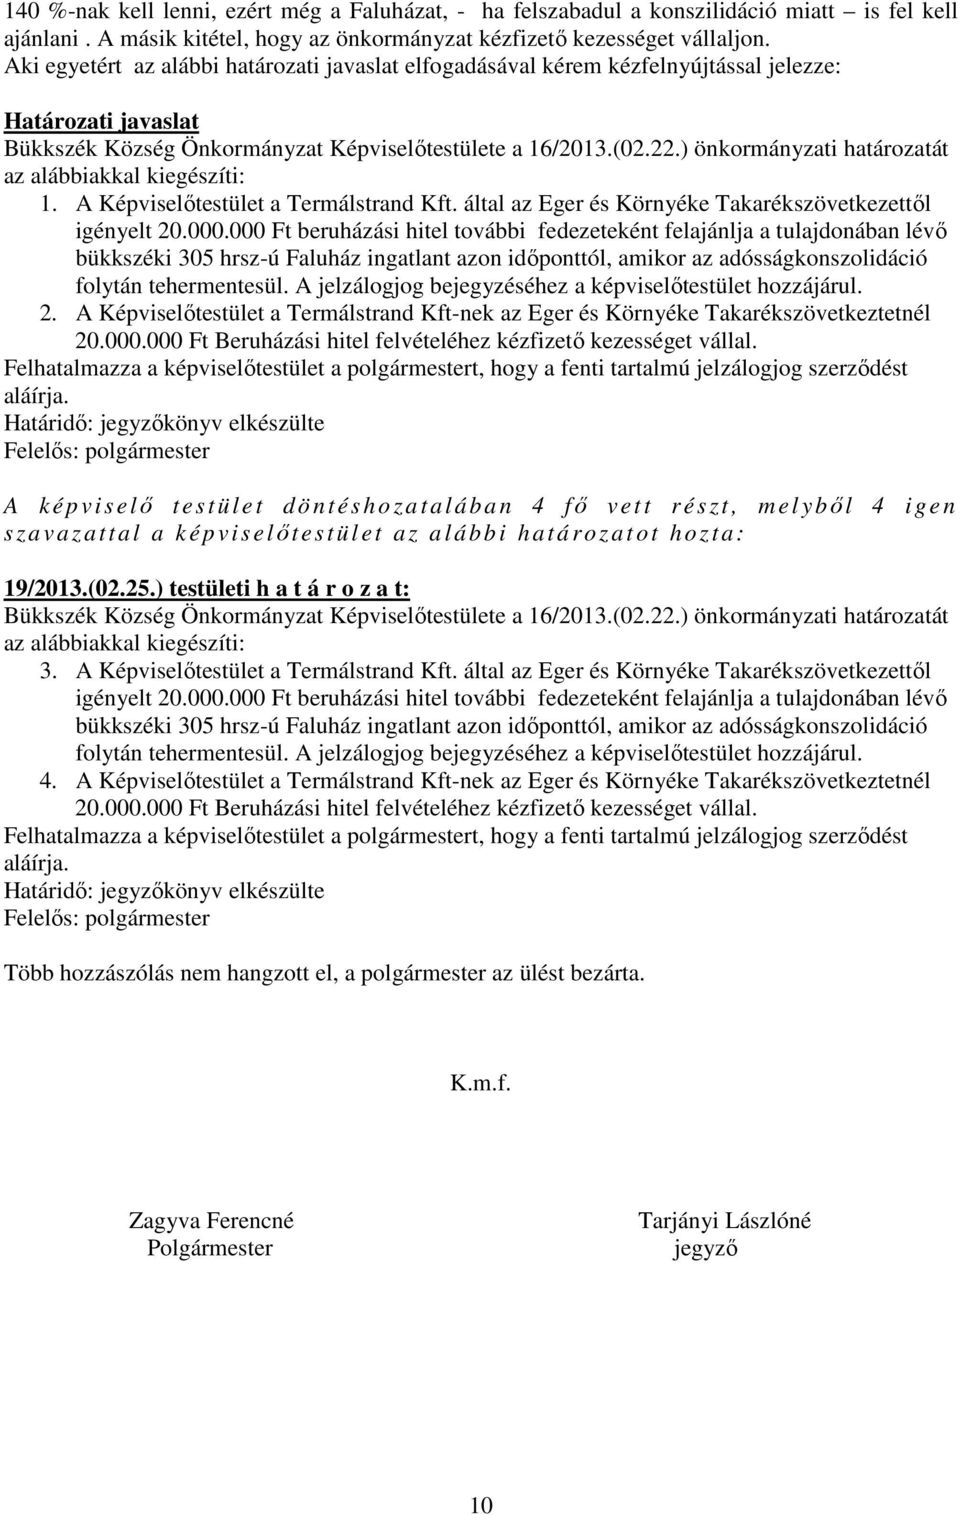 ) önkormányzati határozatát az alábbiakkal kiegészíti: 1. A Képviselőtestület a Termálstrand Kft. által az Eger és Környéke Takarékszövetkezettől igényelt 20.000.